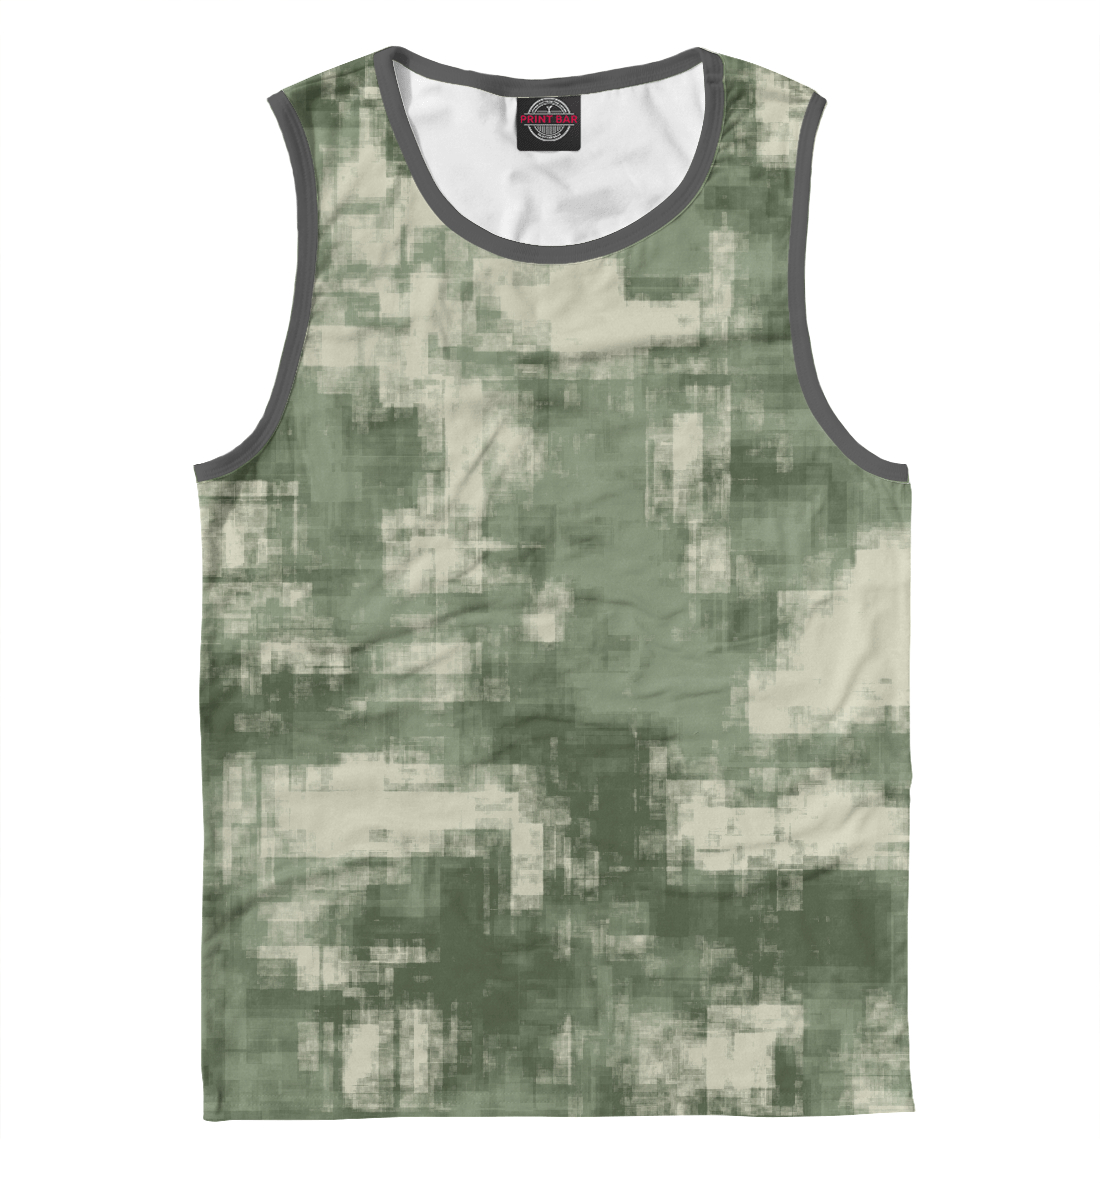 Детская Майка Военный камуфляж- одежда для мужчин и женщин для мальчиков, артикул CMF-442561-may-2mp